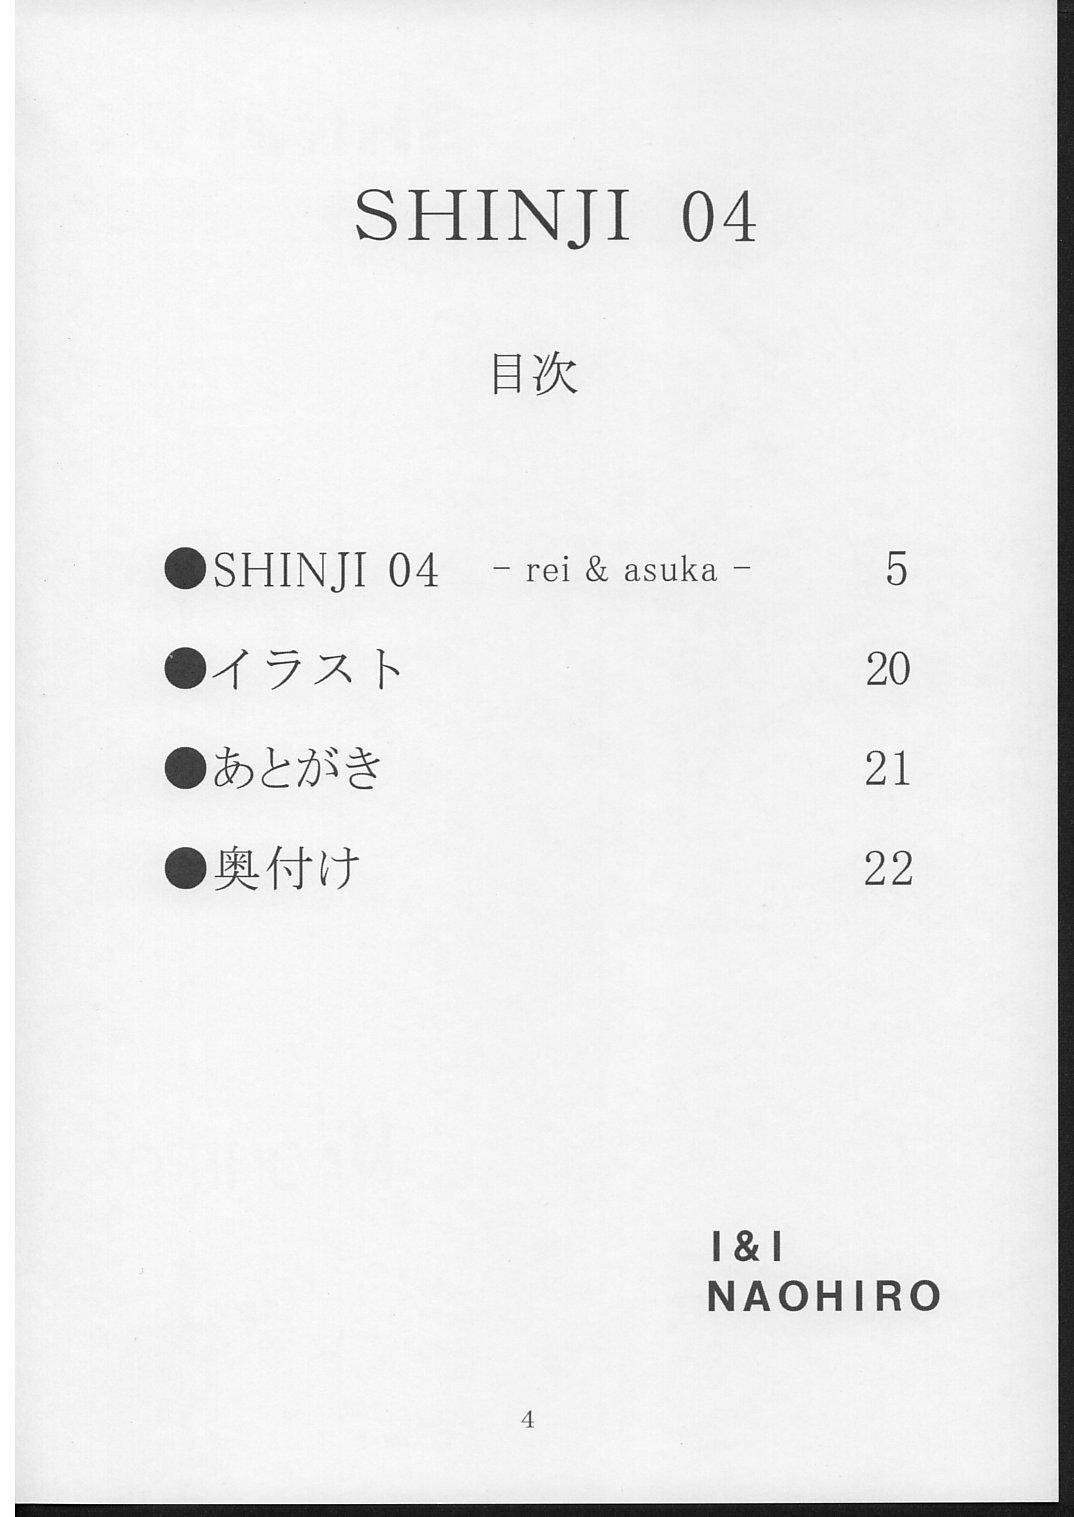 SHINJI 04 - rei & askua 2